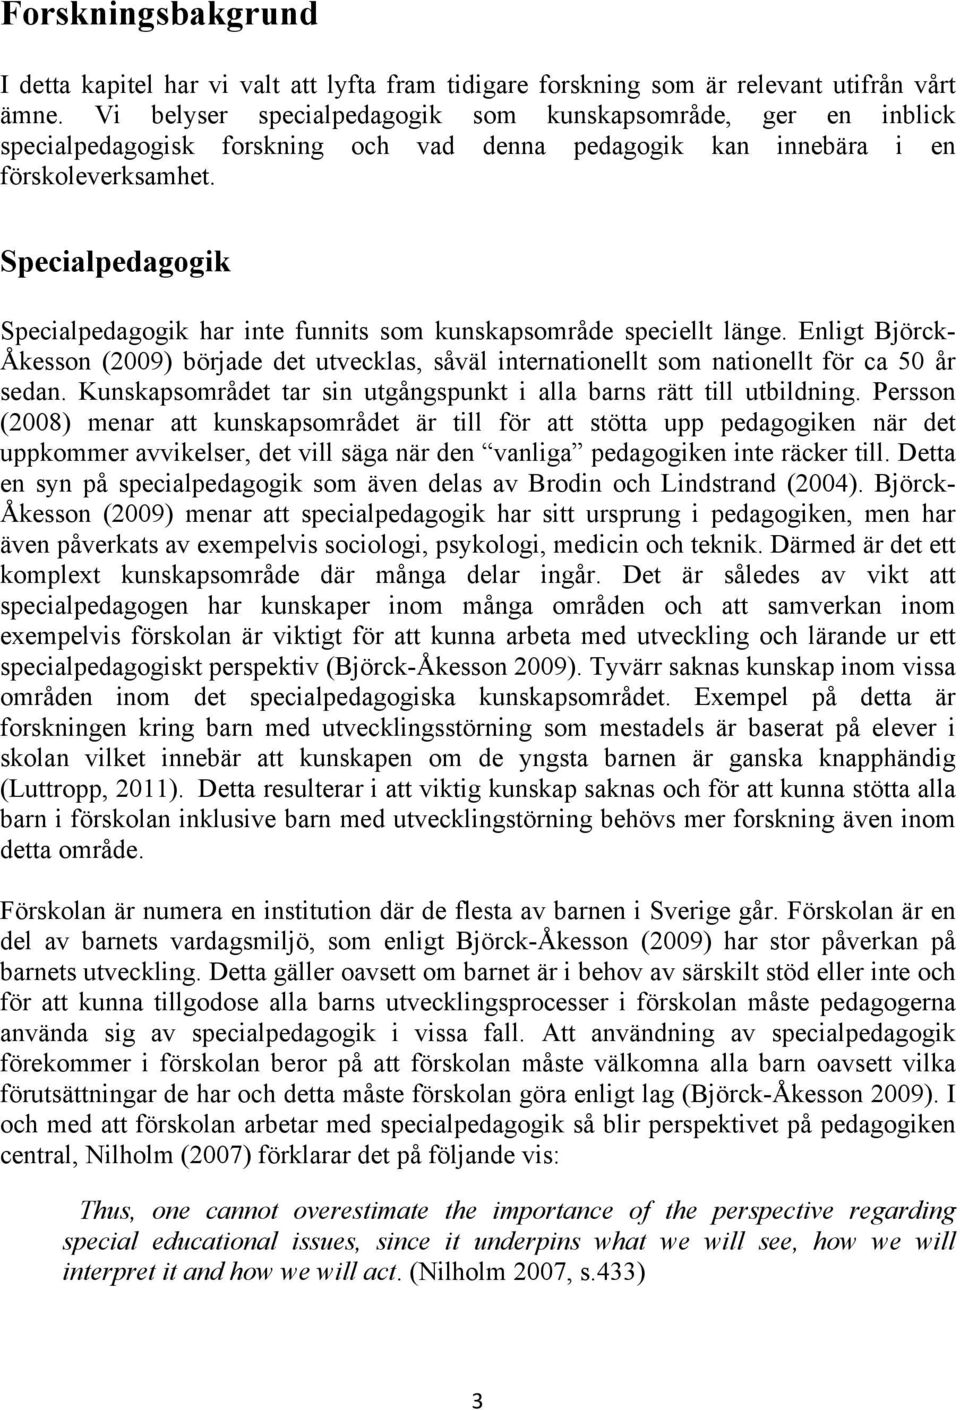 Specialpedagogik Specialpedagogik har inte funnits som kunskapsområde speciellt länge. Enligt Björck- Åkesson (2009) började det utvecklas, såväl internationellt som nationellt för ca 50 år sedan.